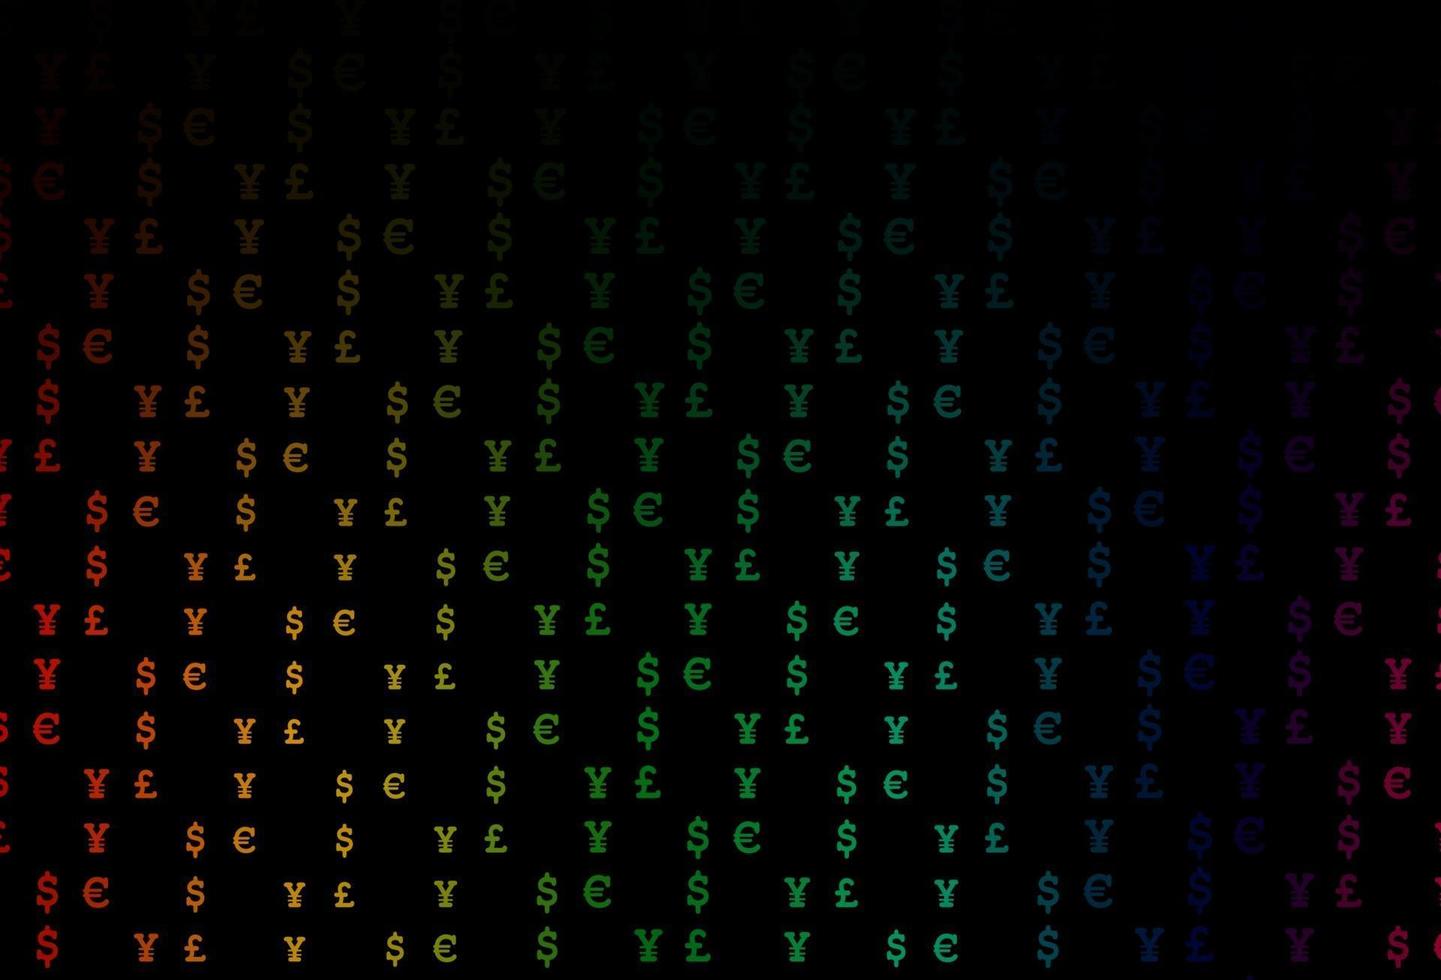 textura multicolor escura do vetor do arco-íris com símbolos financeiros.